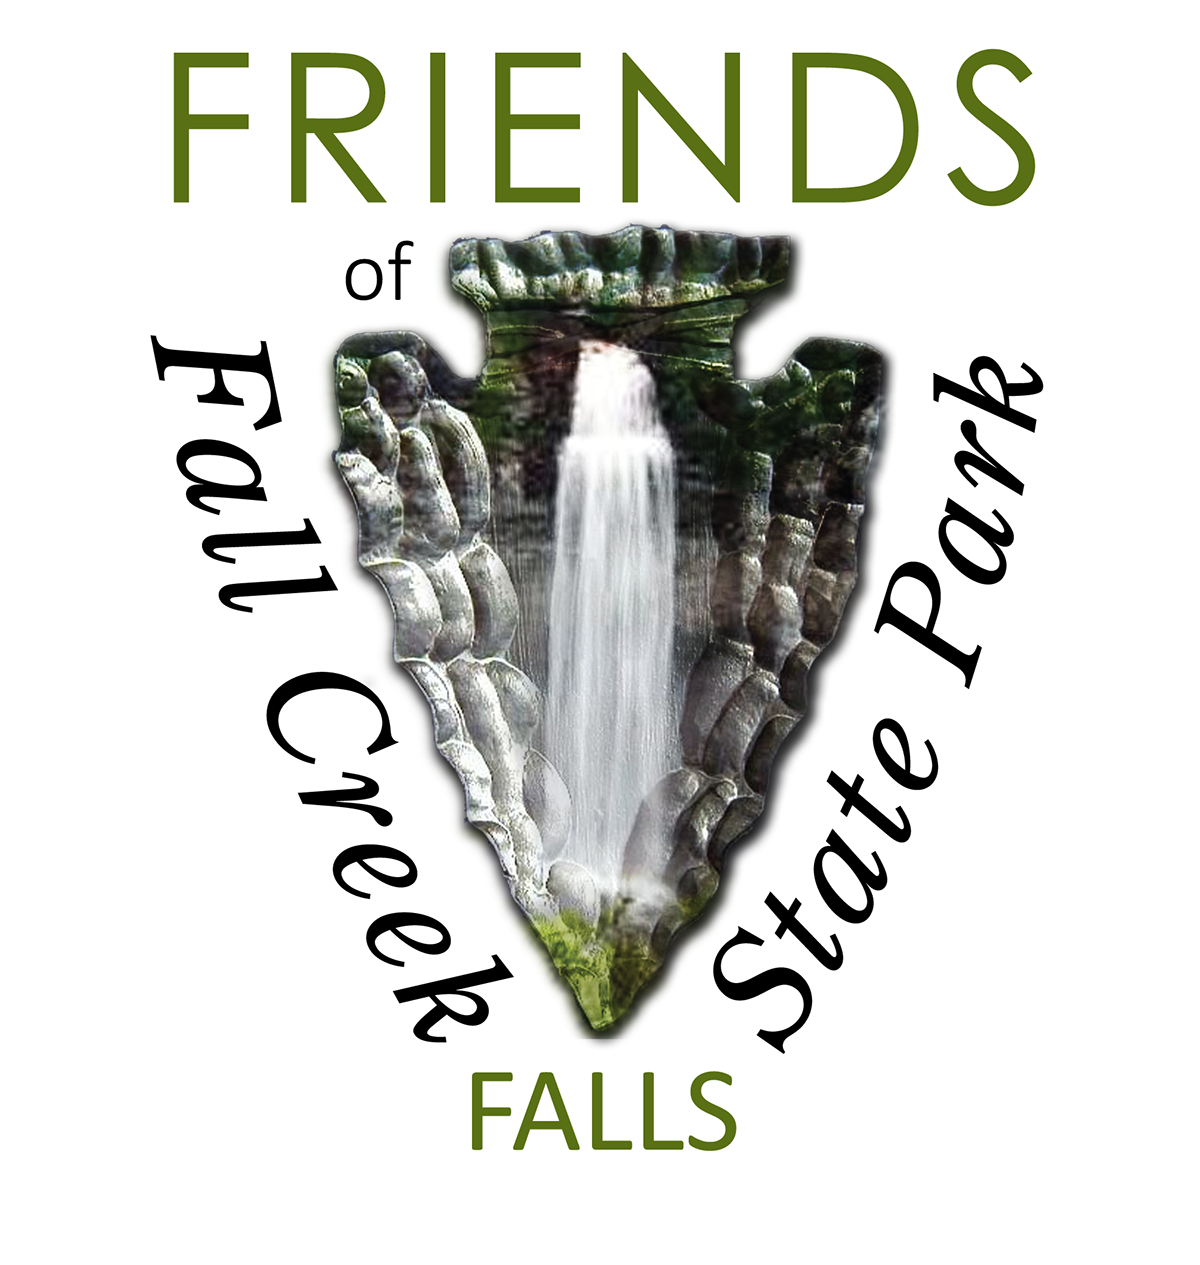 Friends of Fall Creek falls Waterfalls state park